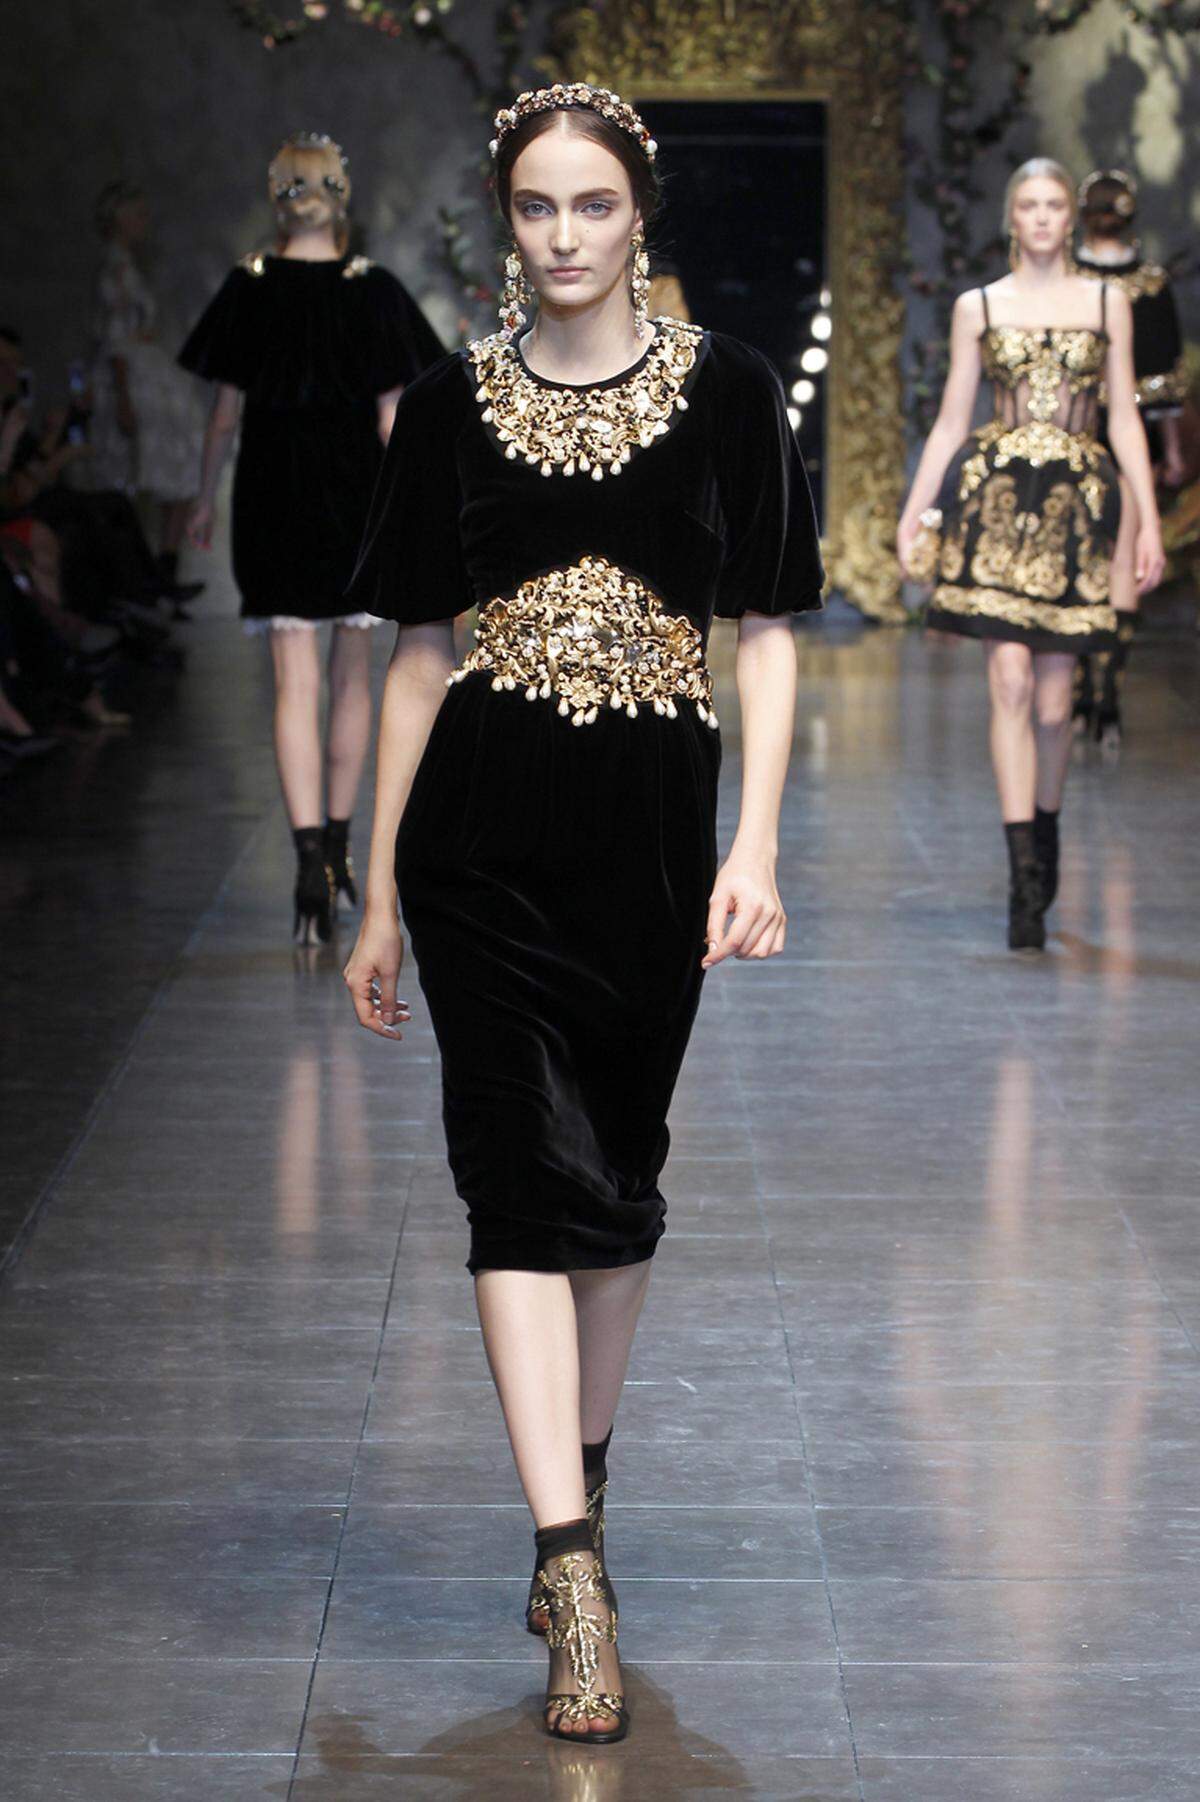 Luxuriös und glamourös ist diese Version von Dolce & Gabbana mit Goldschmuck.